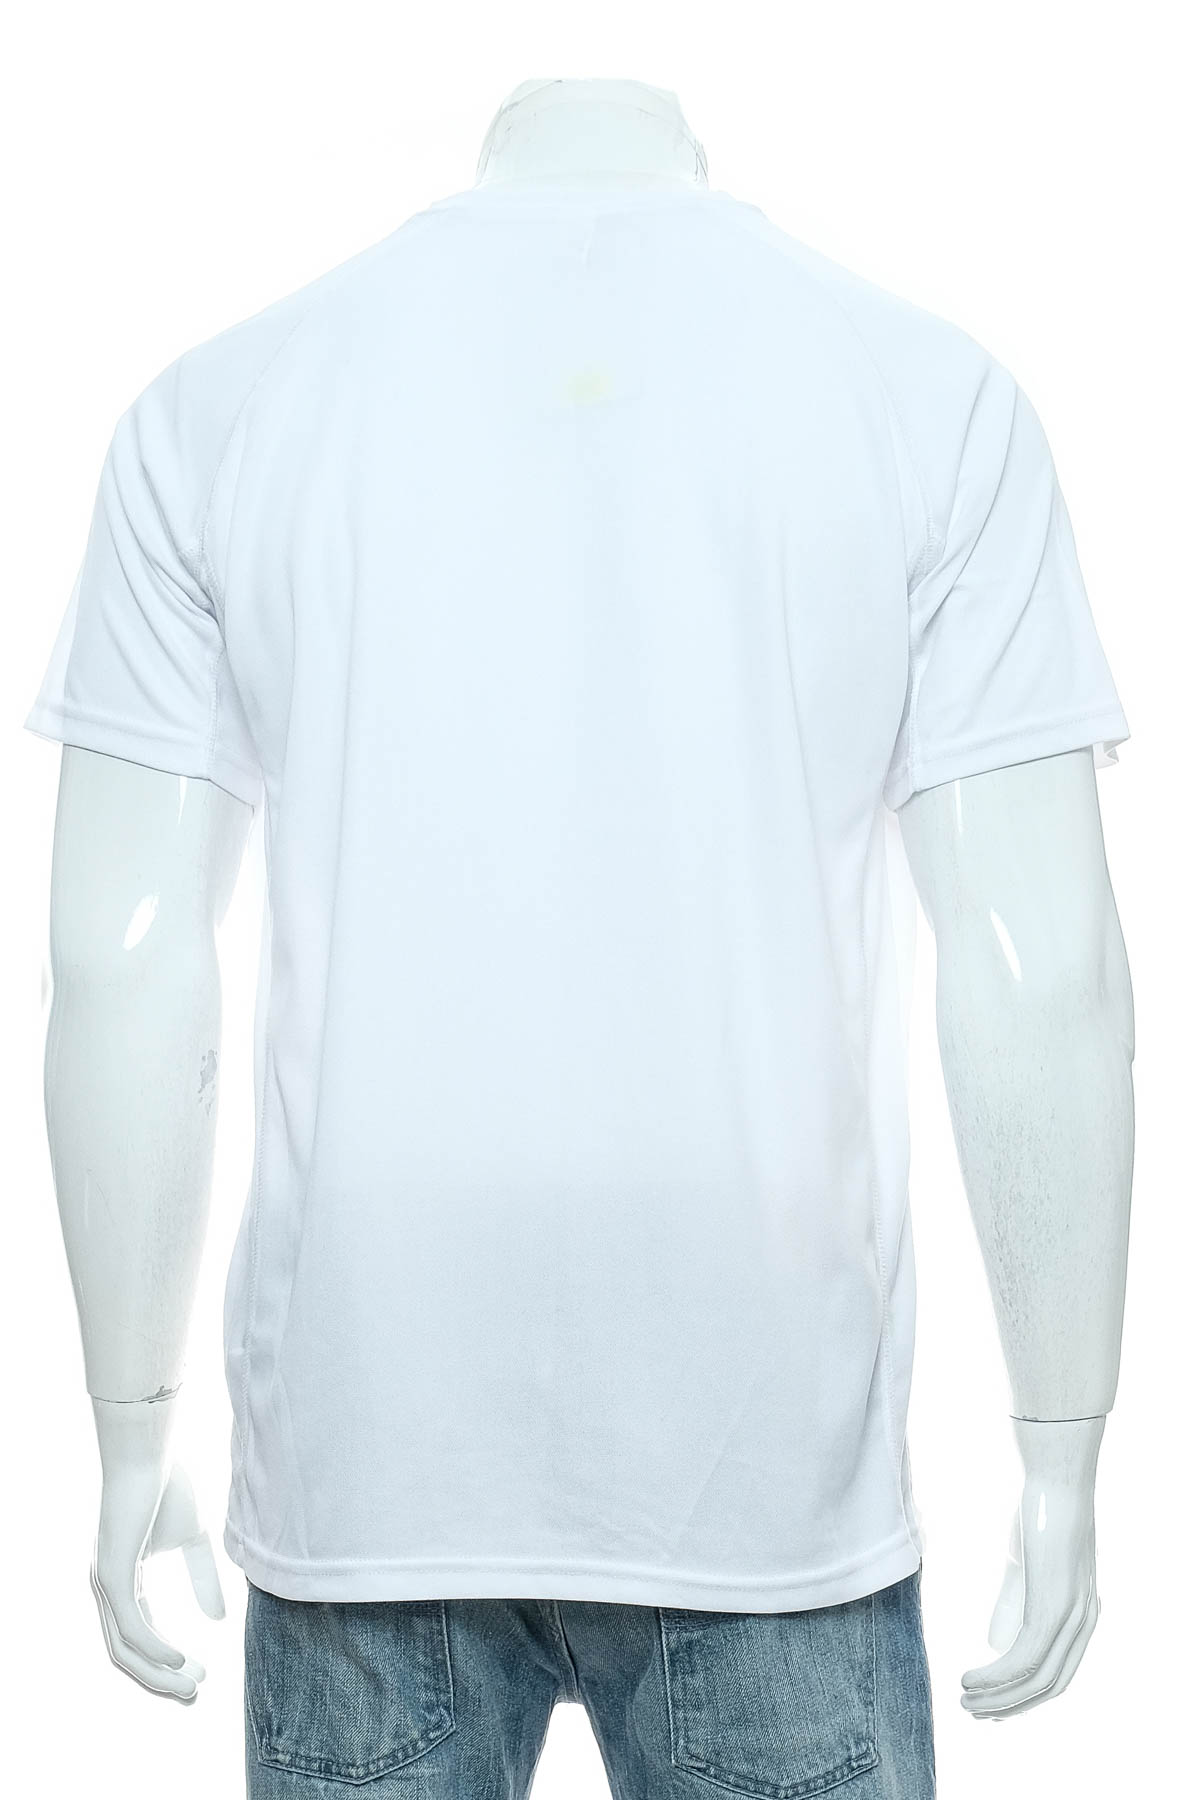 Ανδρικό μπλουζάκι - Roly - 1